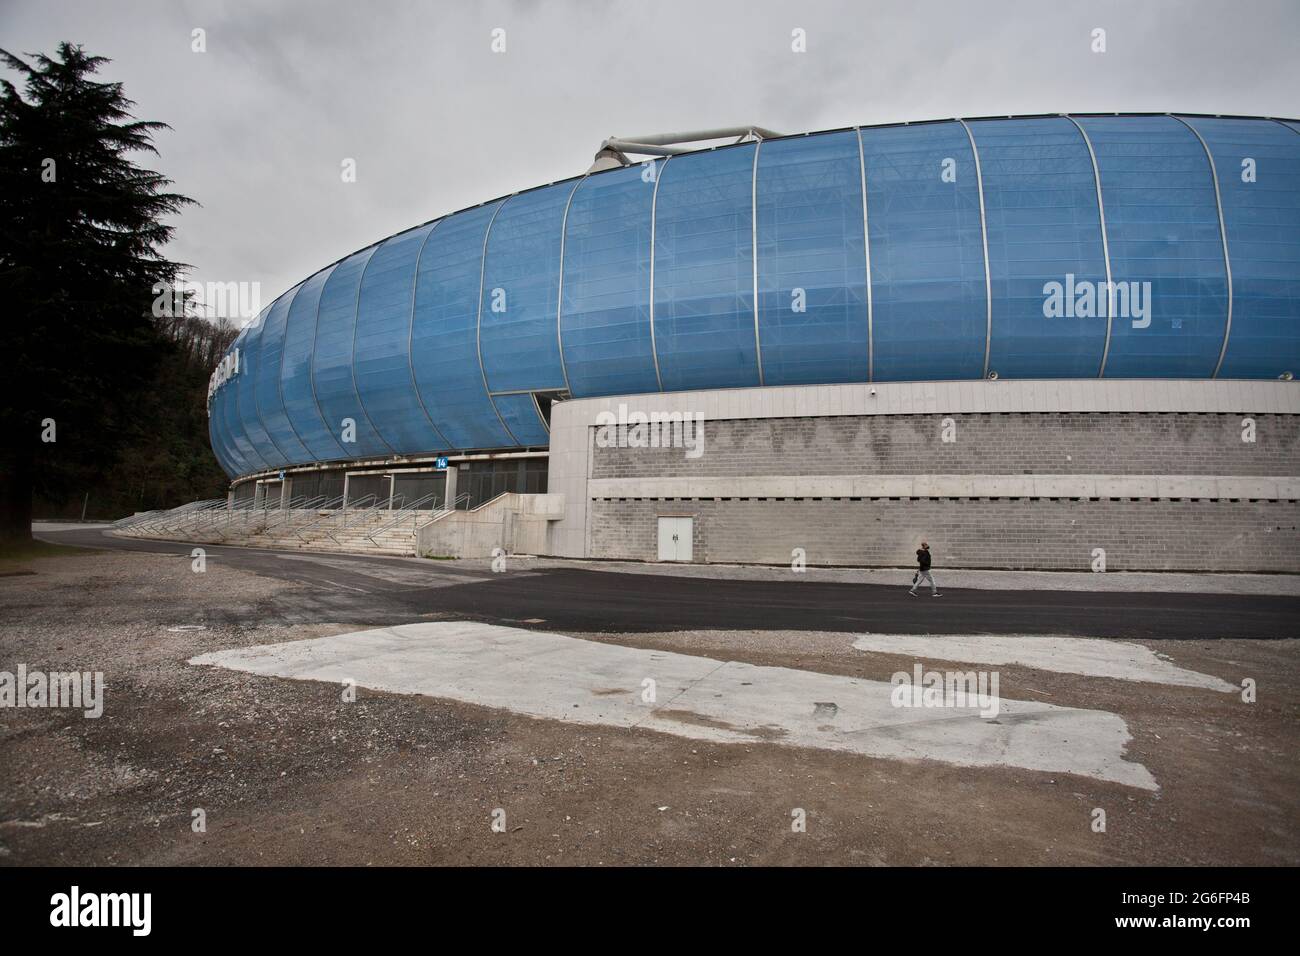 Estadio reale arena fotografías e imágenes de alta resolución - Alamy